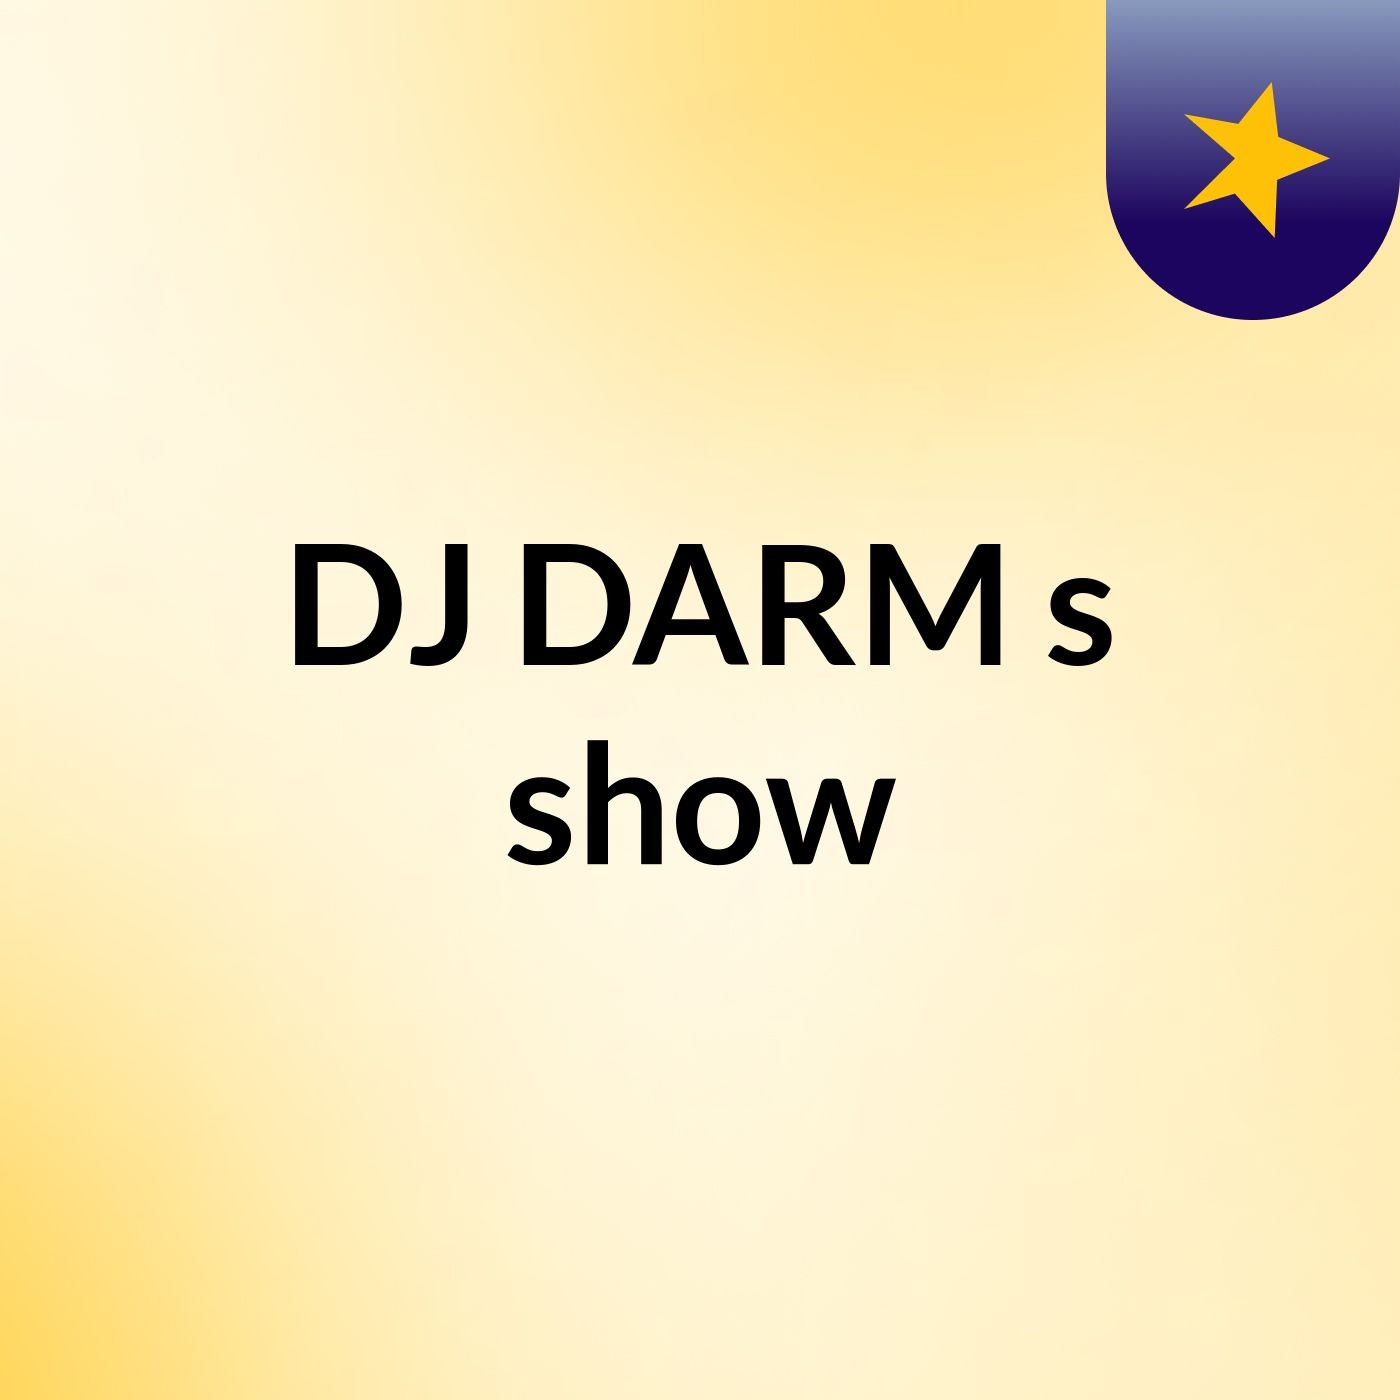 DJ DARM's show